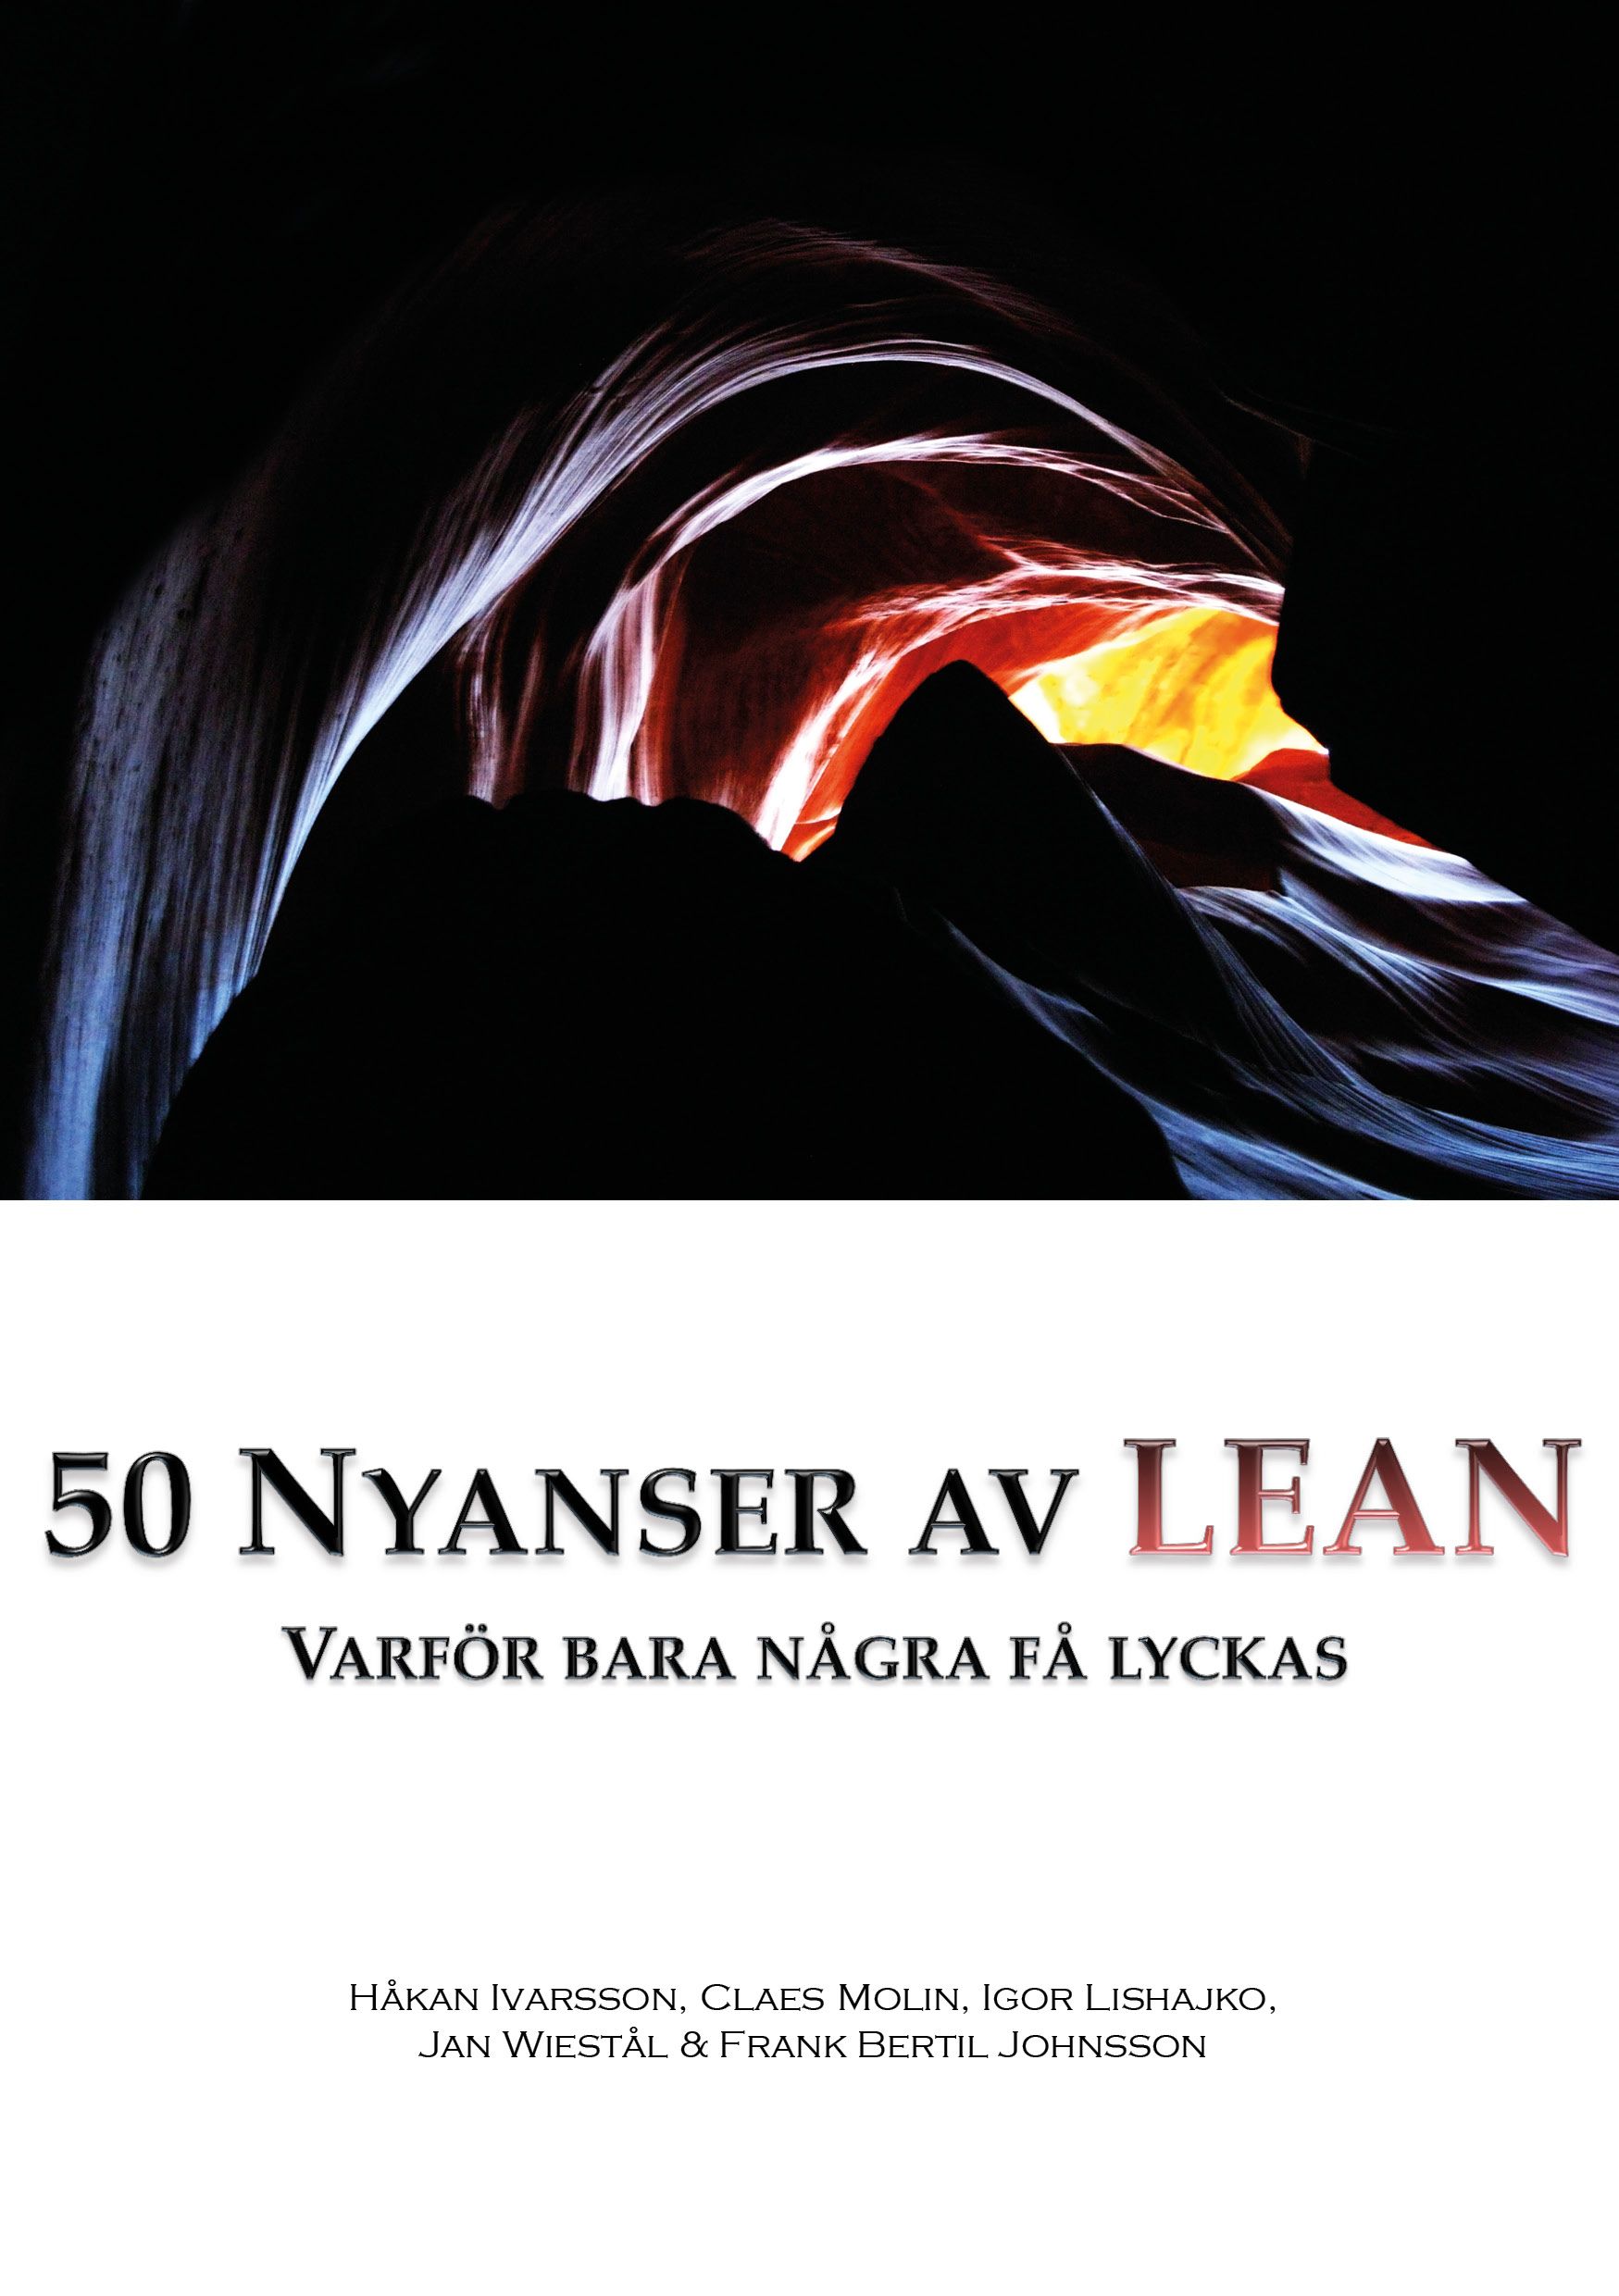 50 nyanser av LEAN, e-bog af Håkan Ivarsson, Frank Bertil Johnsson, Igor Lishajko, Claes Molin, Jan Wiestål